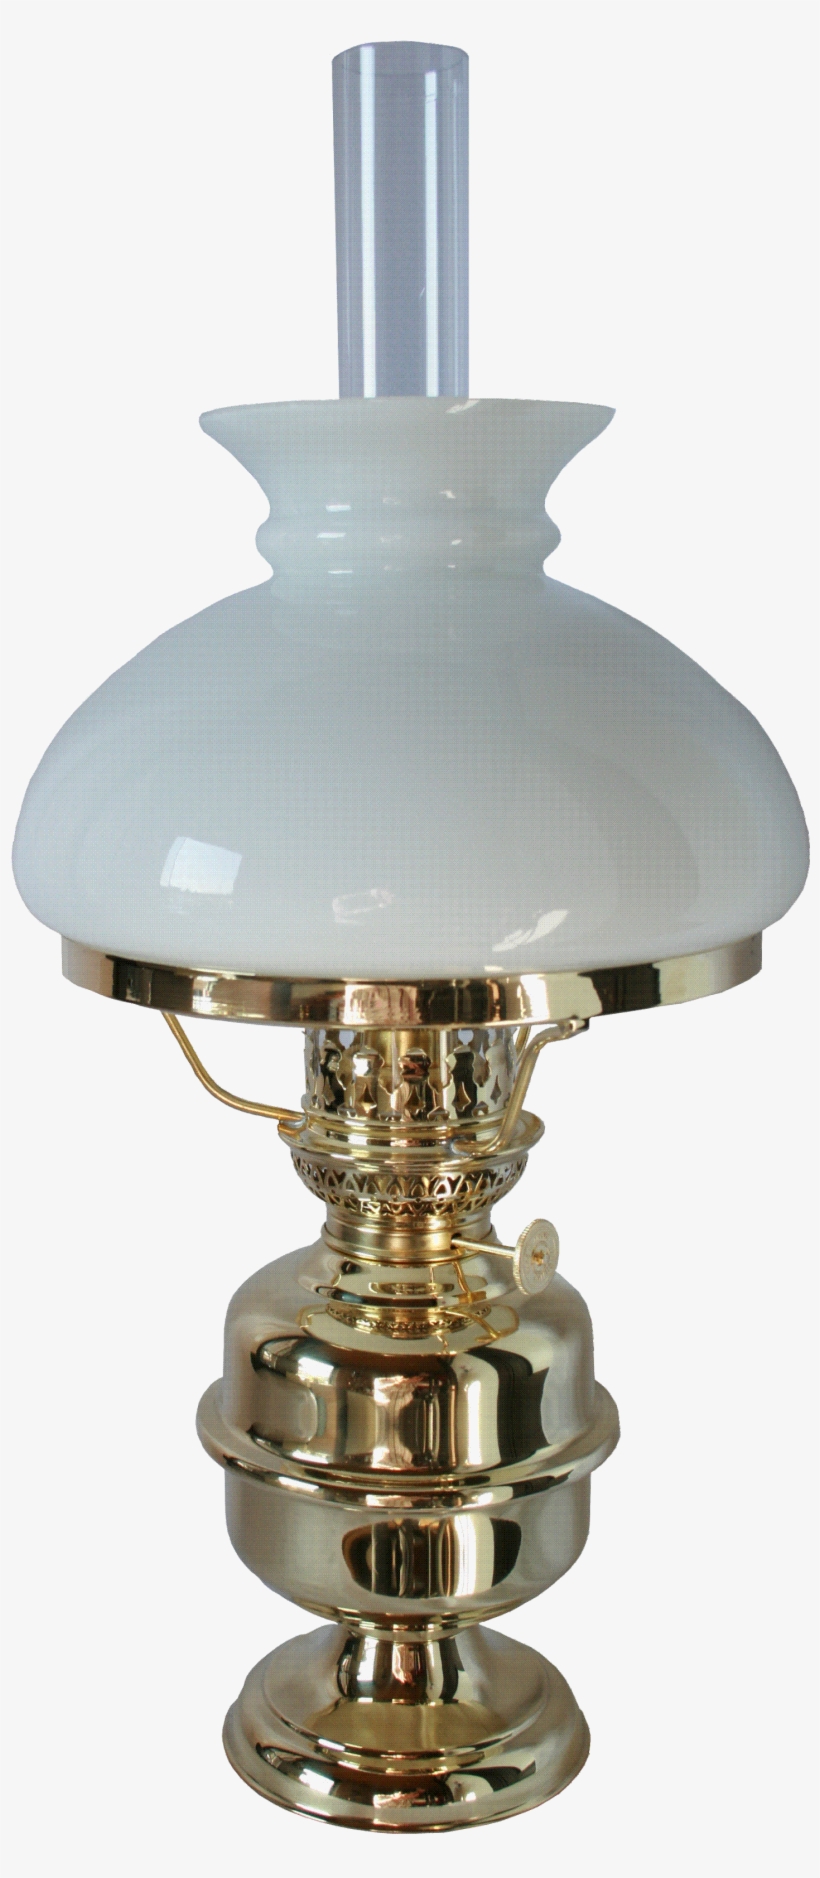 Catalog Electric Lamps - Lampe À Pétrole Png, transparent png #3899292